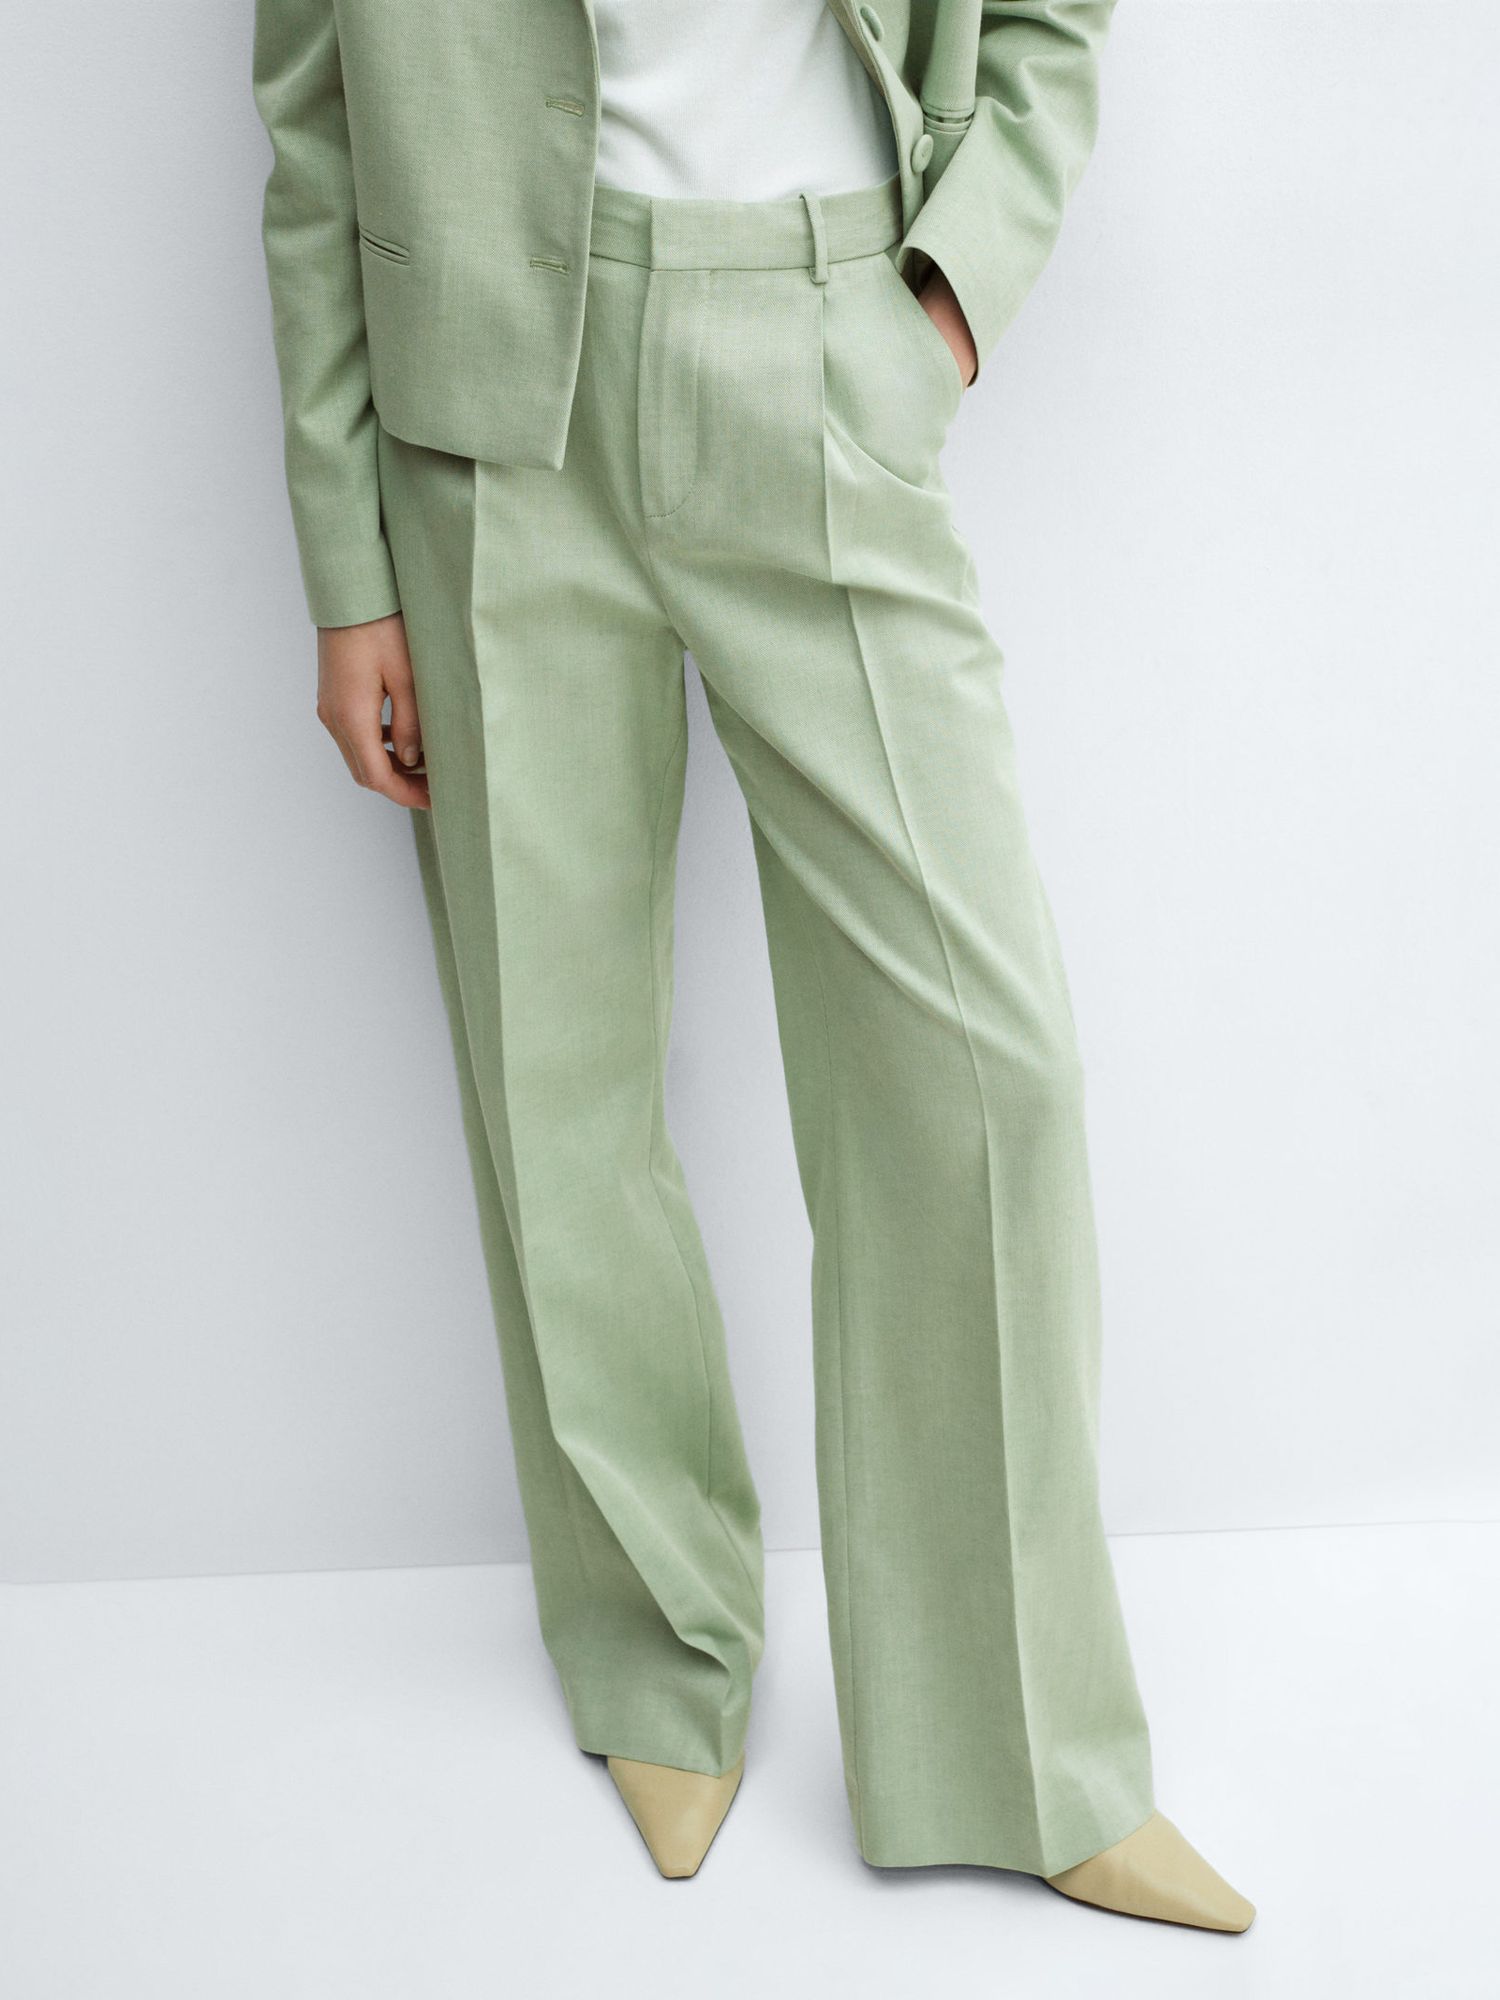 Mango Sevilla Linen Blend Wide Leg Trousers, Green, 4